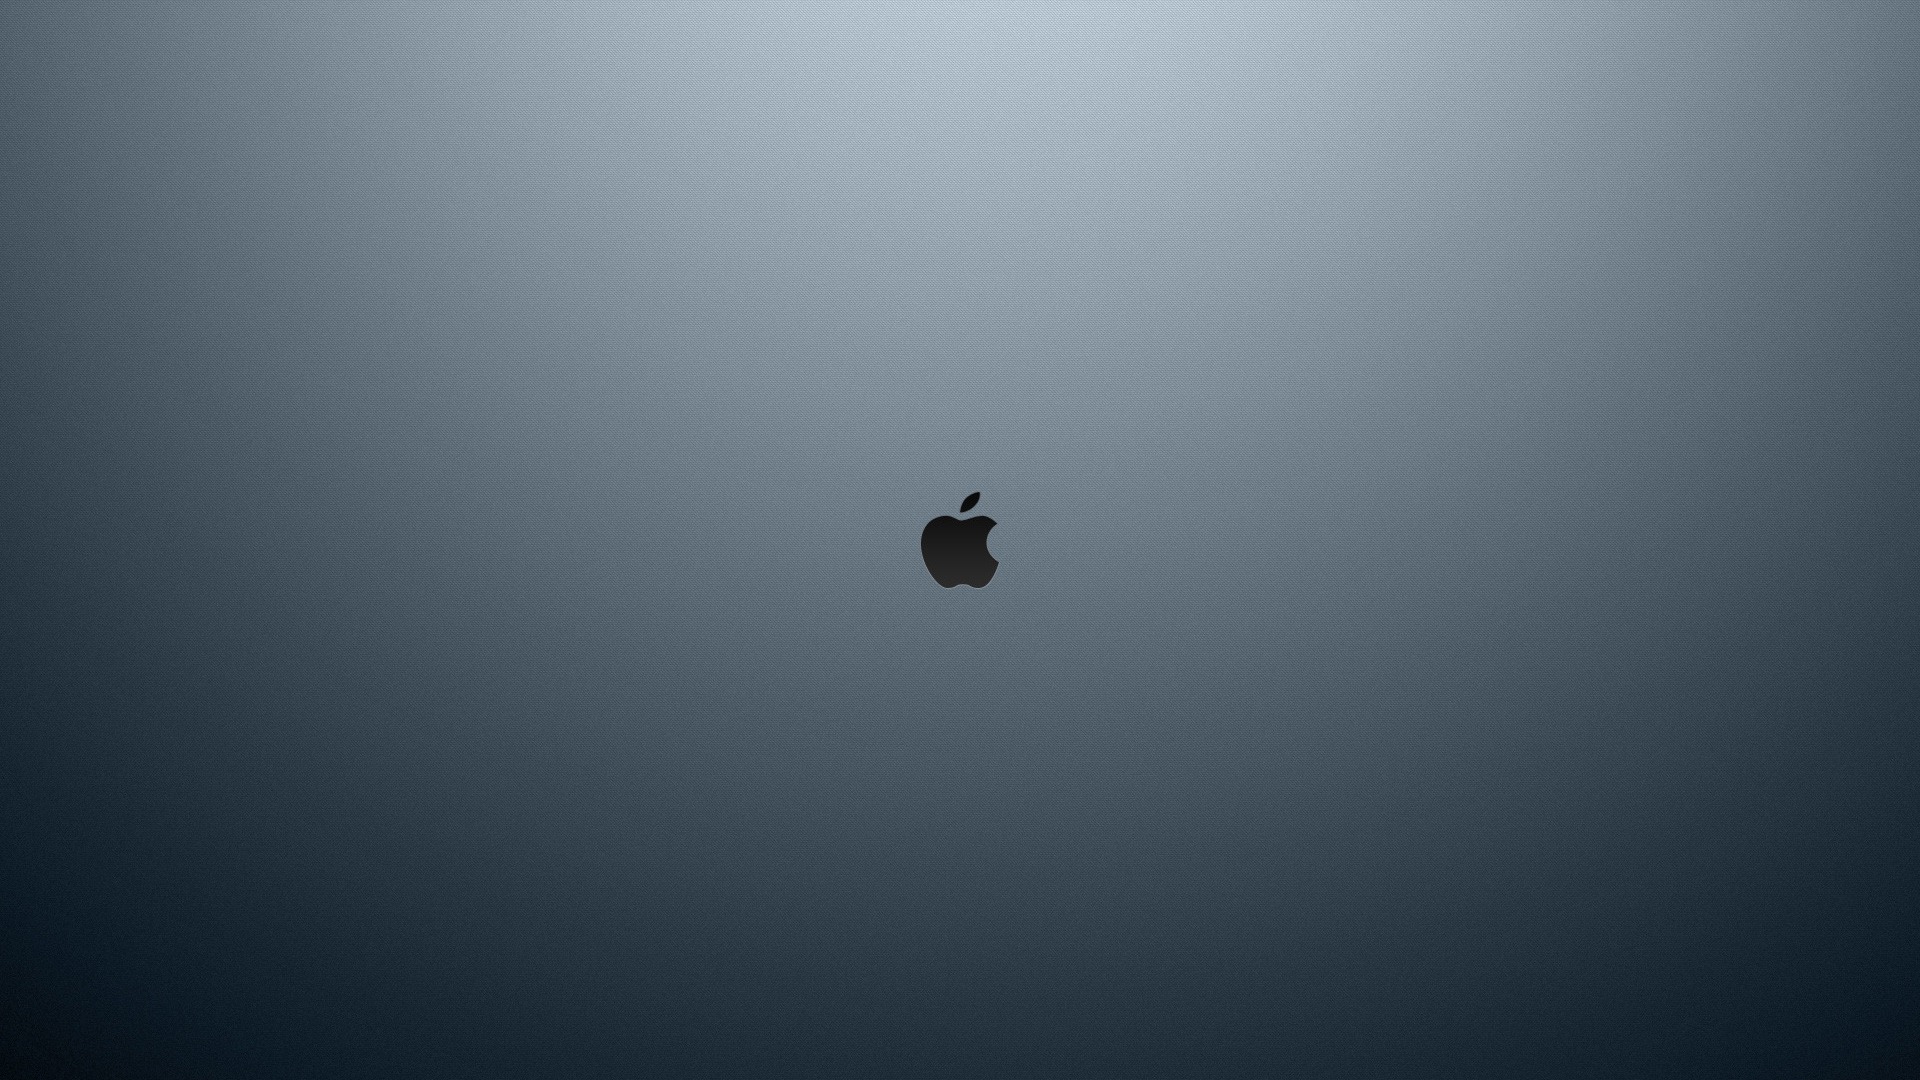 Apple HD Wallpaper